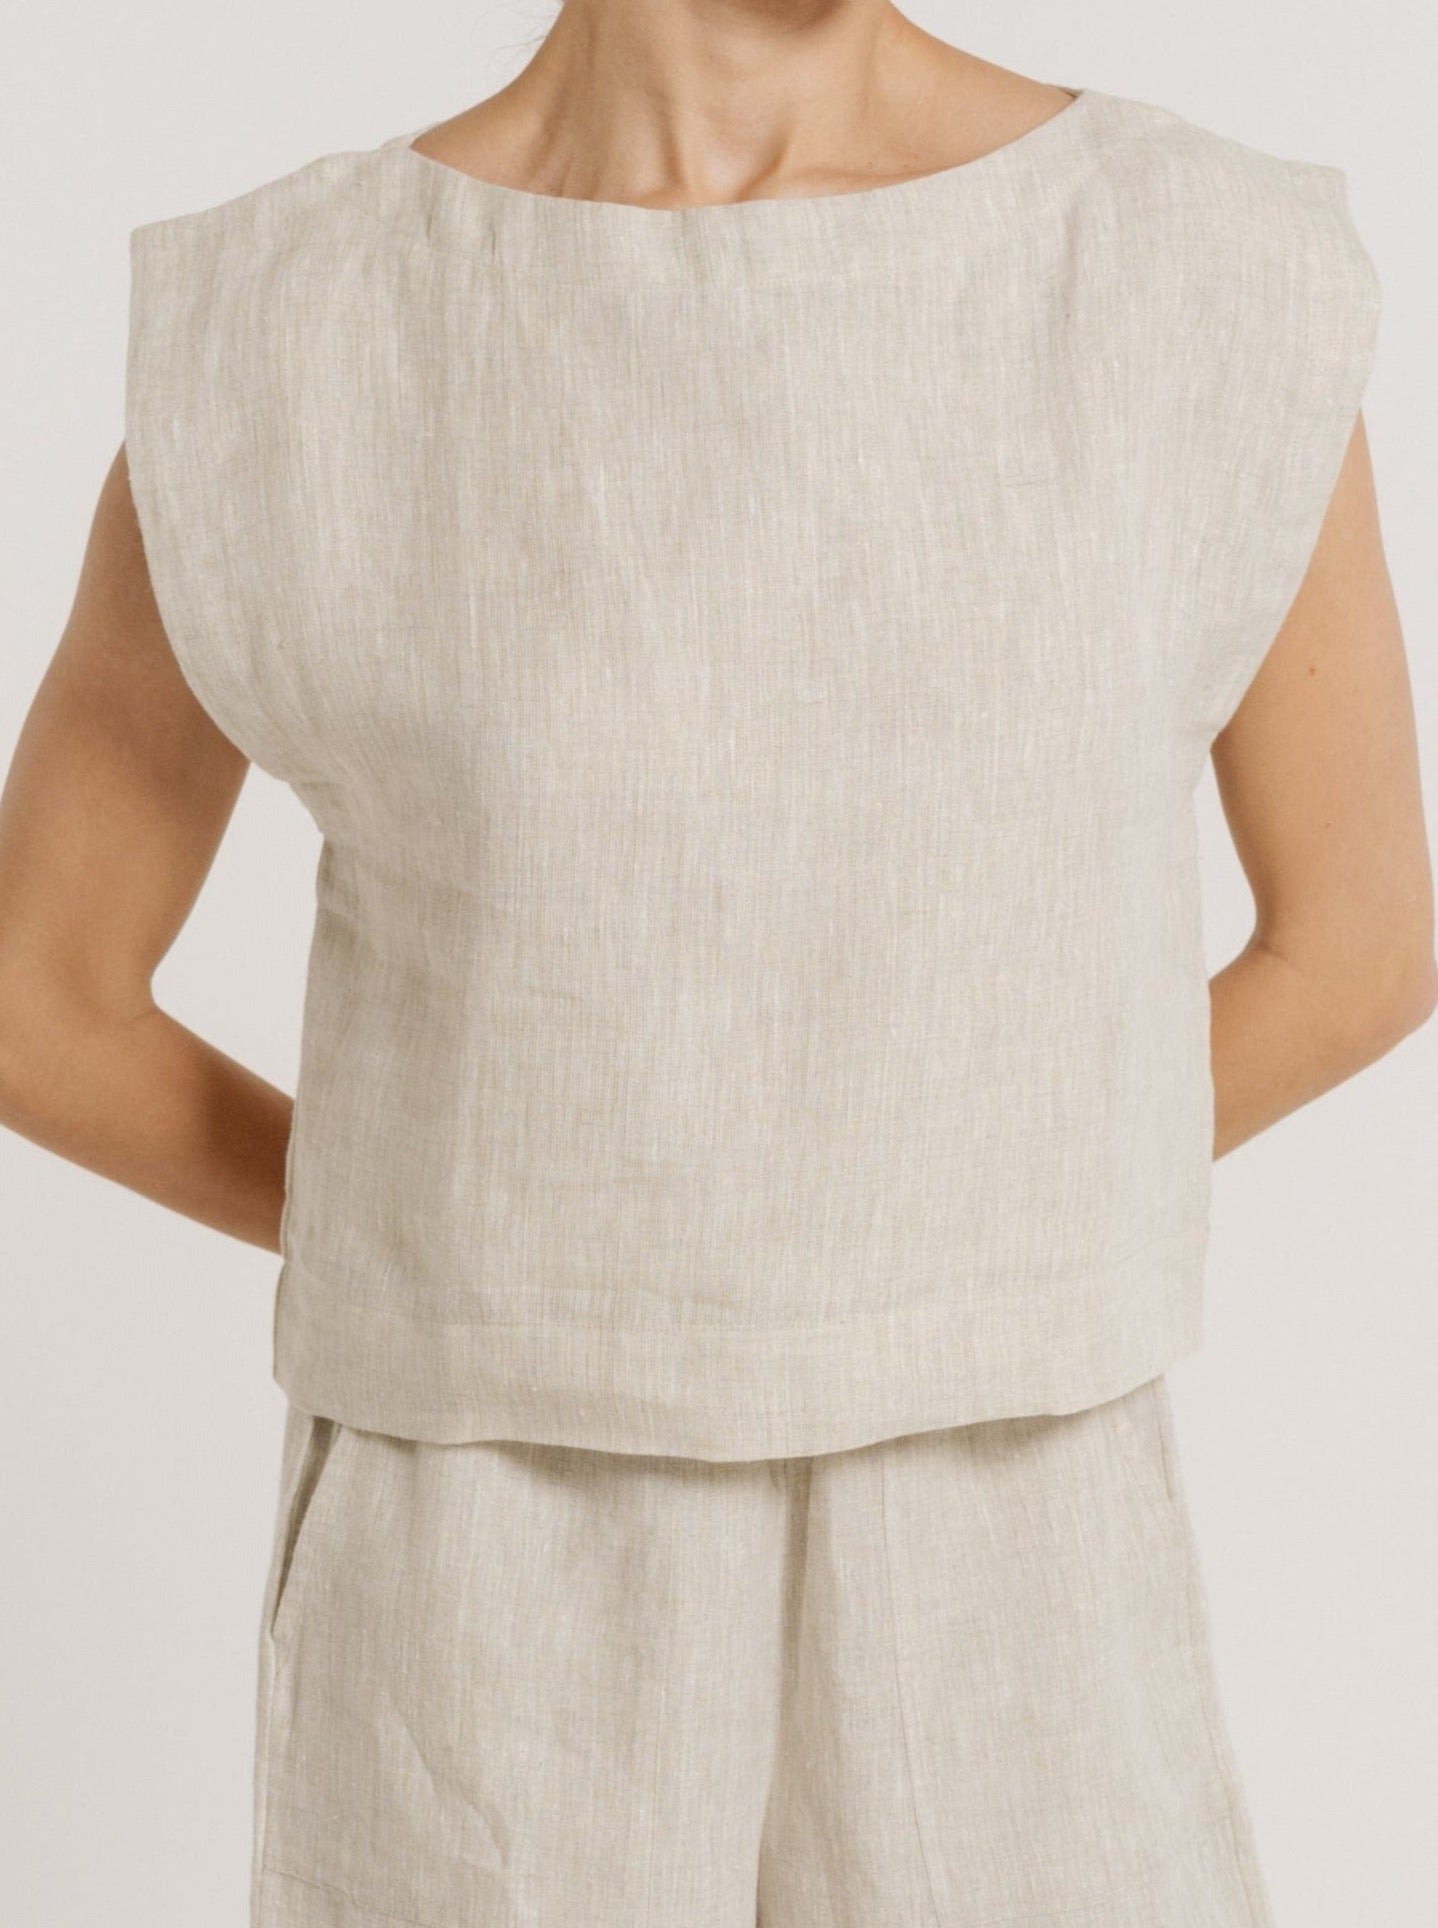 A woman wearing a certified organic linen beige Everyday Top - Natural Linen.